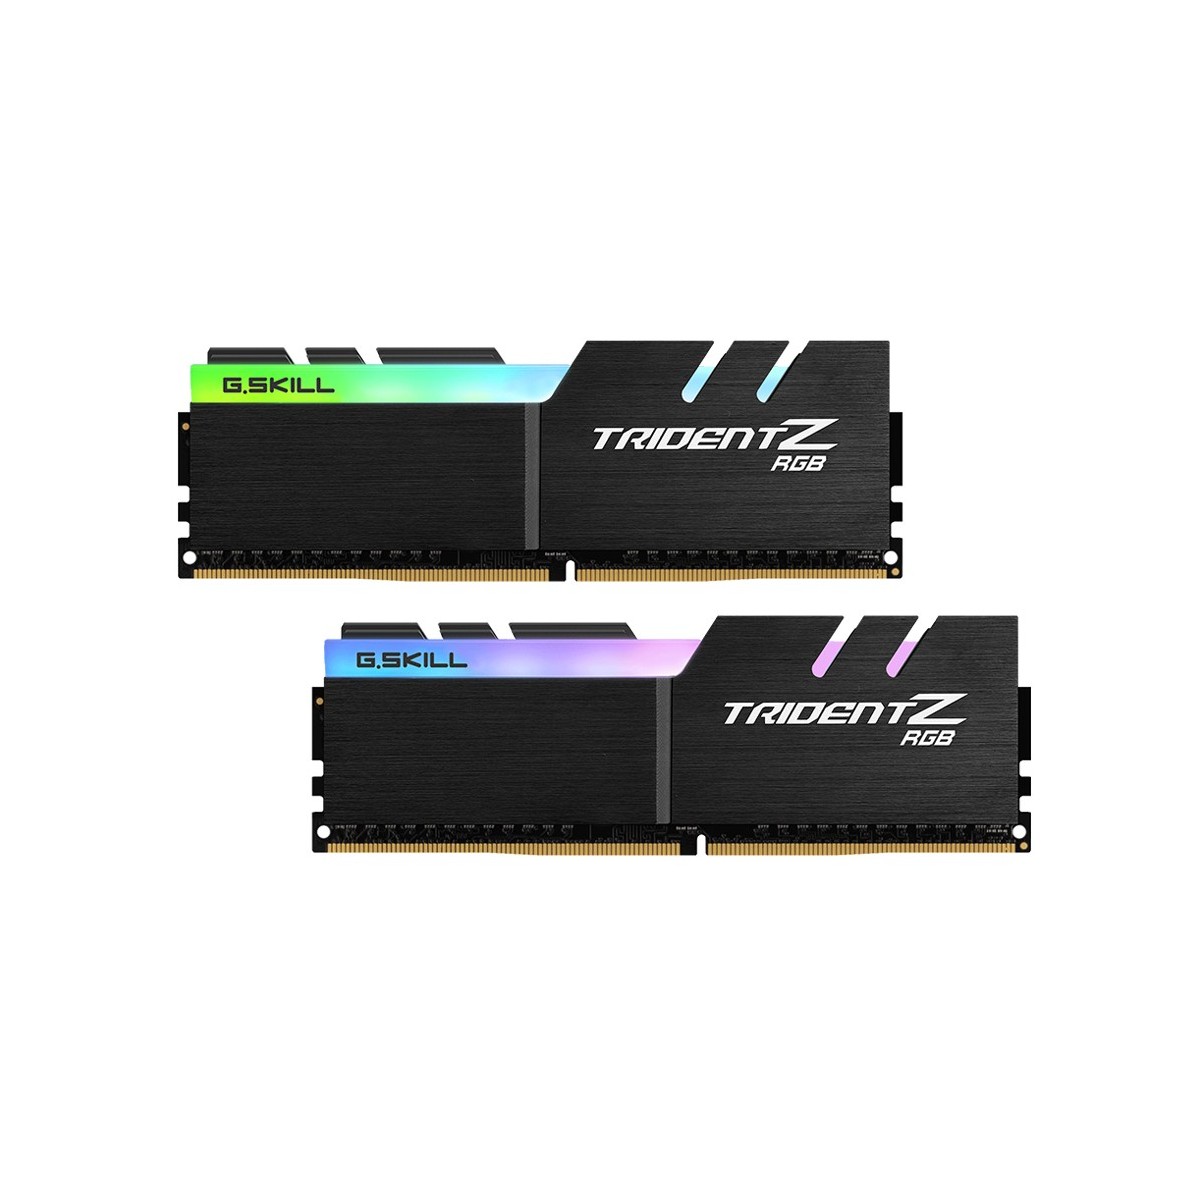 G.Skill D464GB 4266-19 Trident Z RGB K2 GSK| F4-4266C19D-64GTZR - 64 GB - DDR4